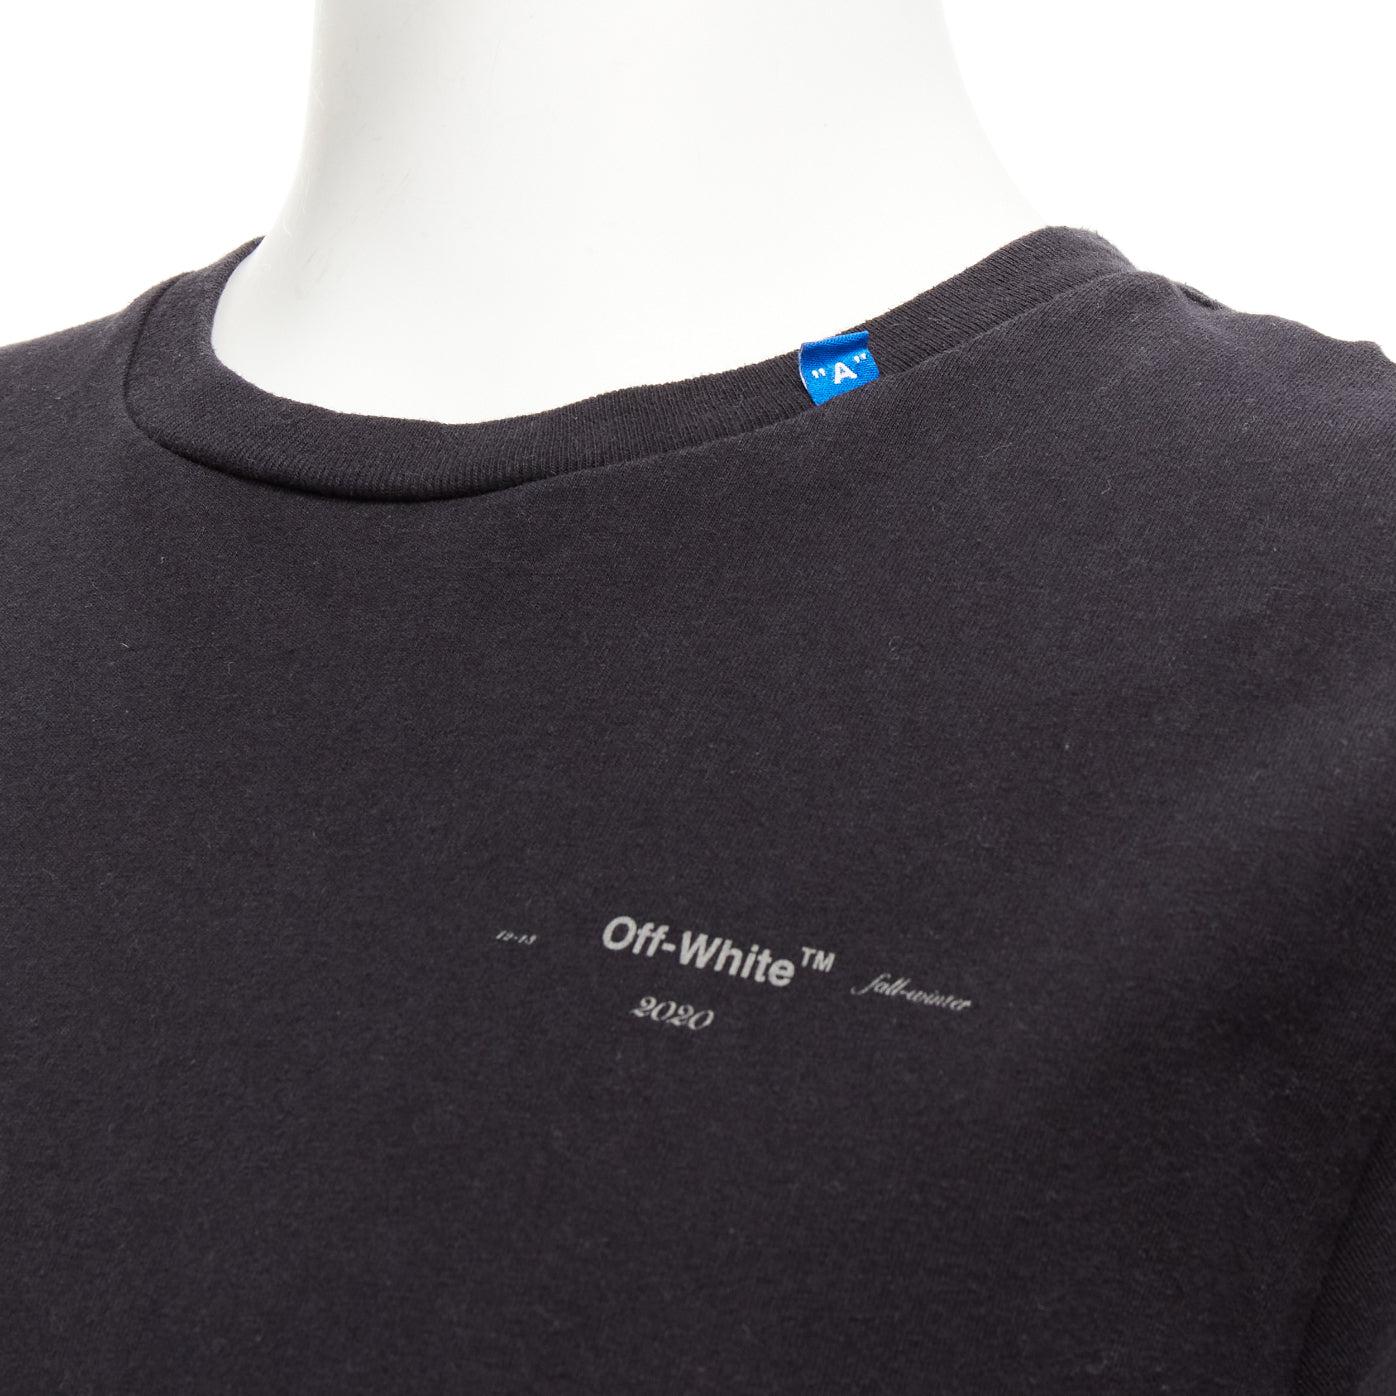 Off-White Virgil Abloh 2020 black logo giant print back cotton tshirt M État moyen - En vente à Hong Kong, NT